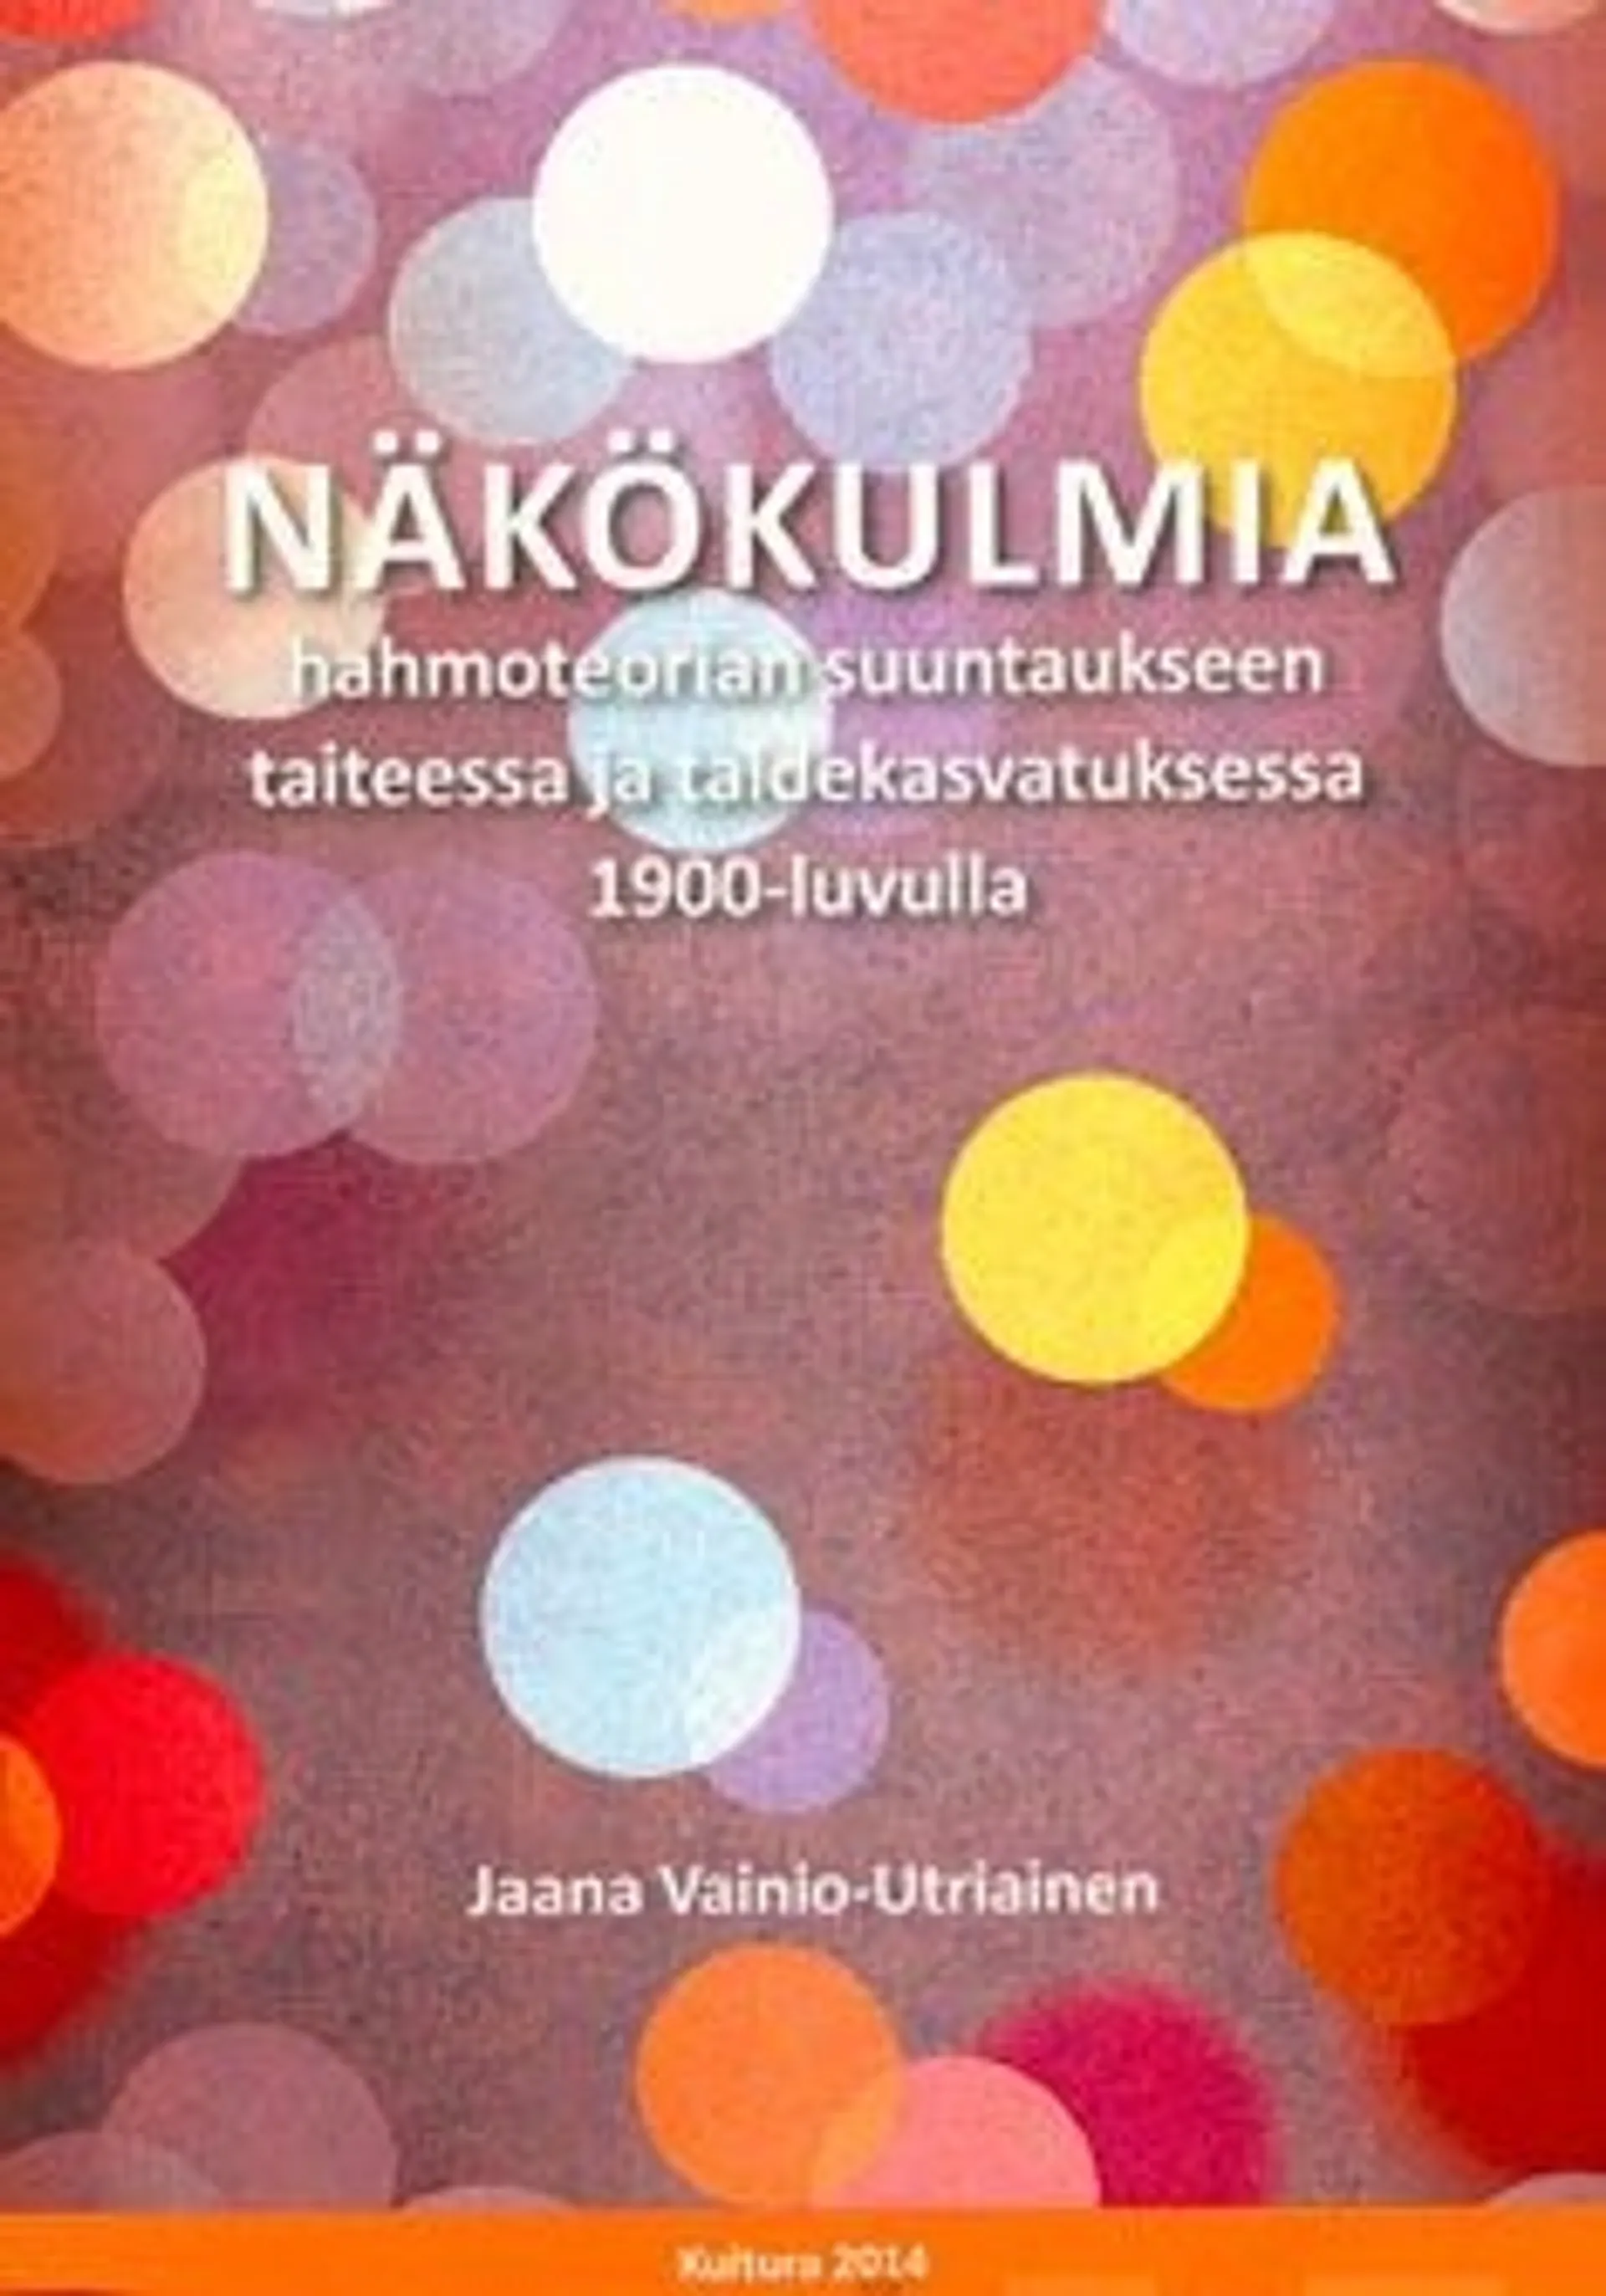 Vainio-Utriainen, Näkökulmia hahmoteorian suuntaukseen taiteessa ja taidekasvatuksessa 1900-luvulla